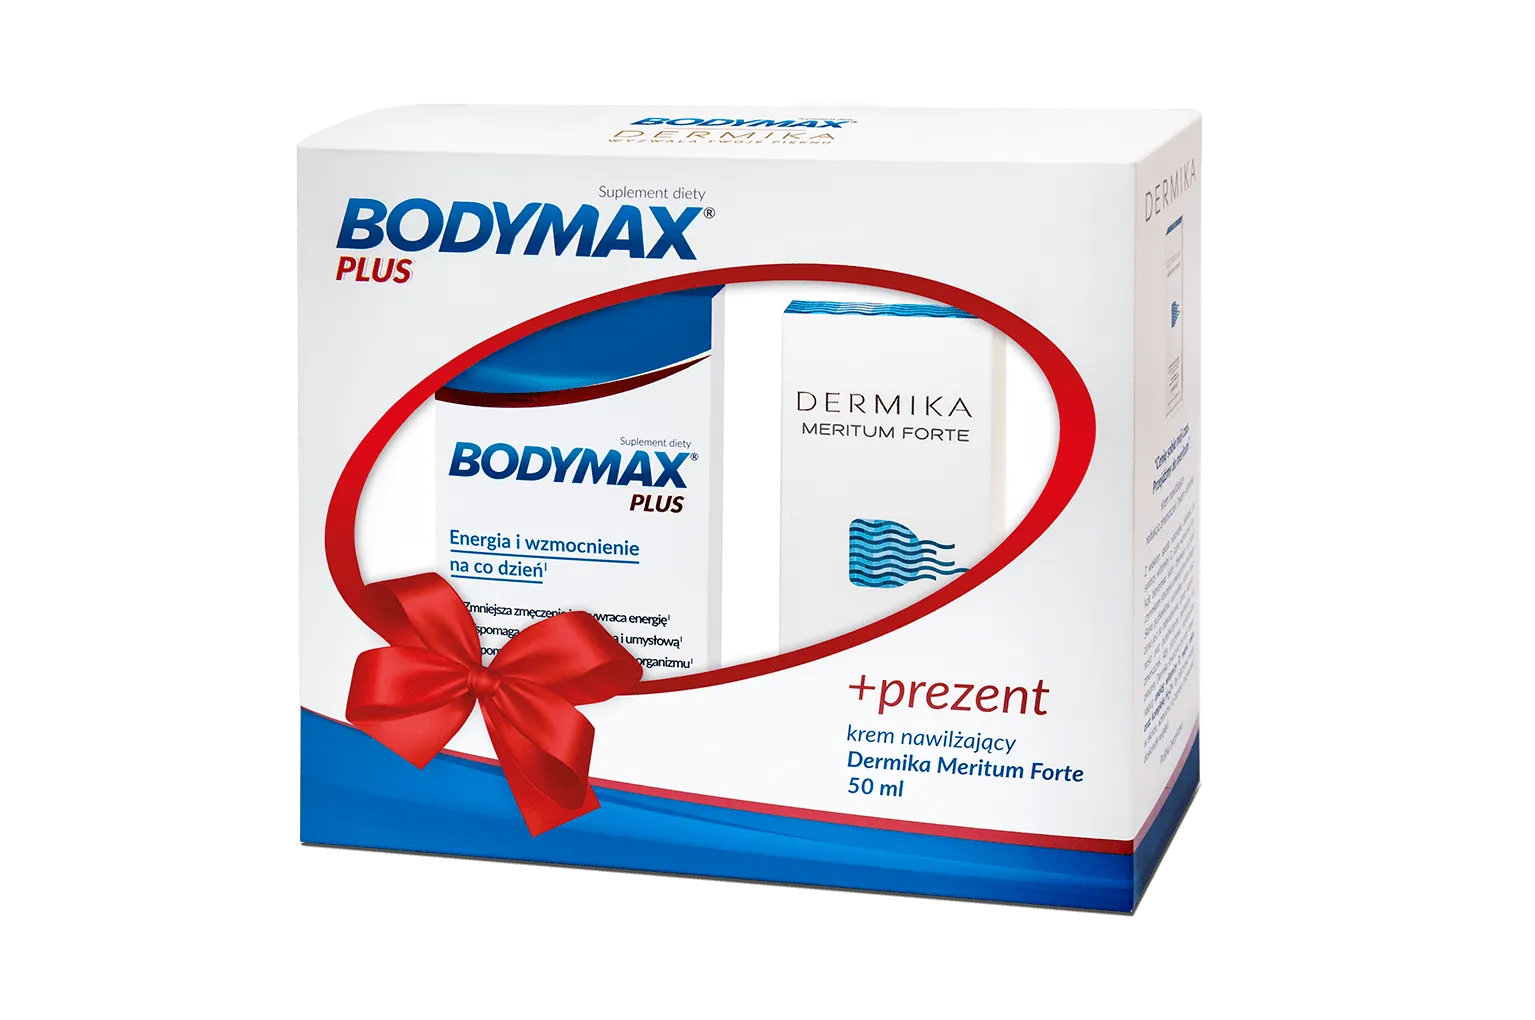 Bodymax Plus, suplement diety, 200 tabletek + Dermika Meritum Forte, krem nawilżający, 50 ml